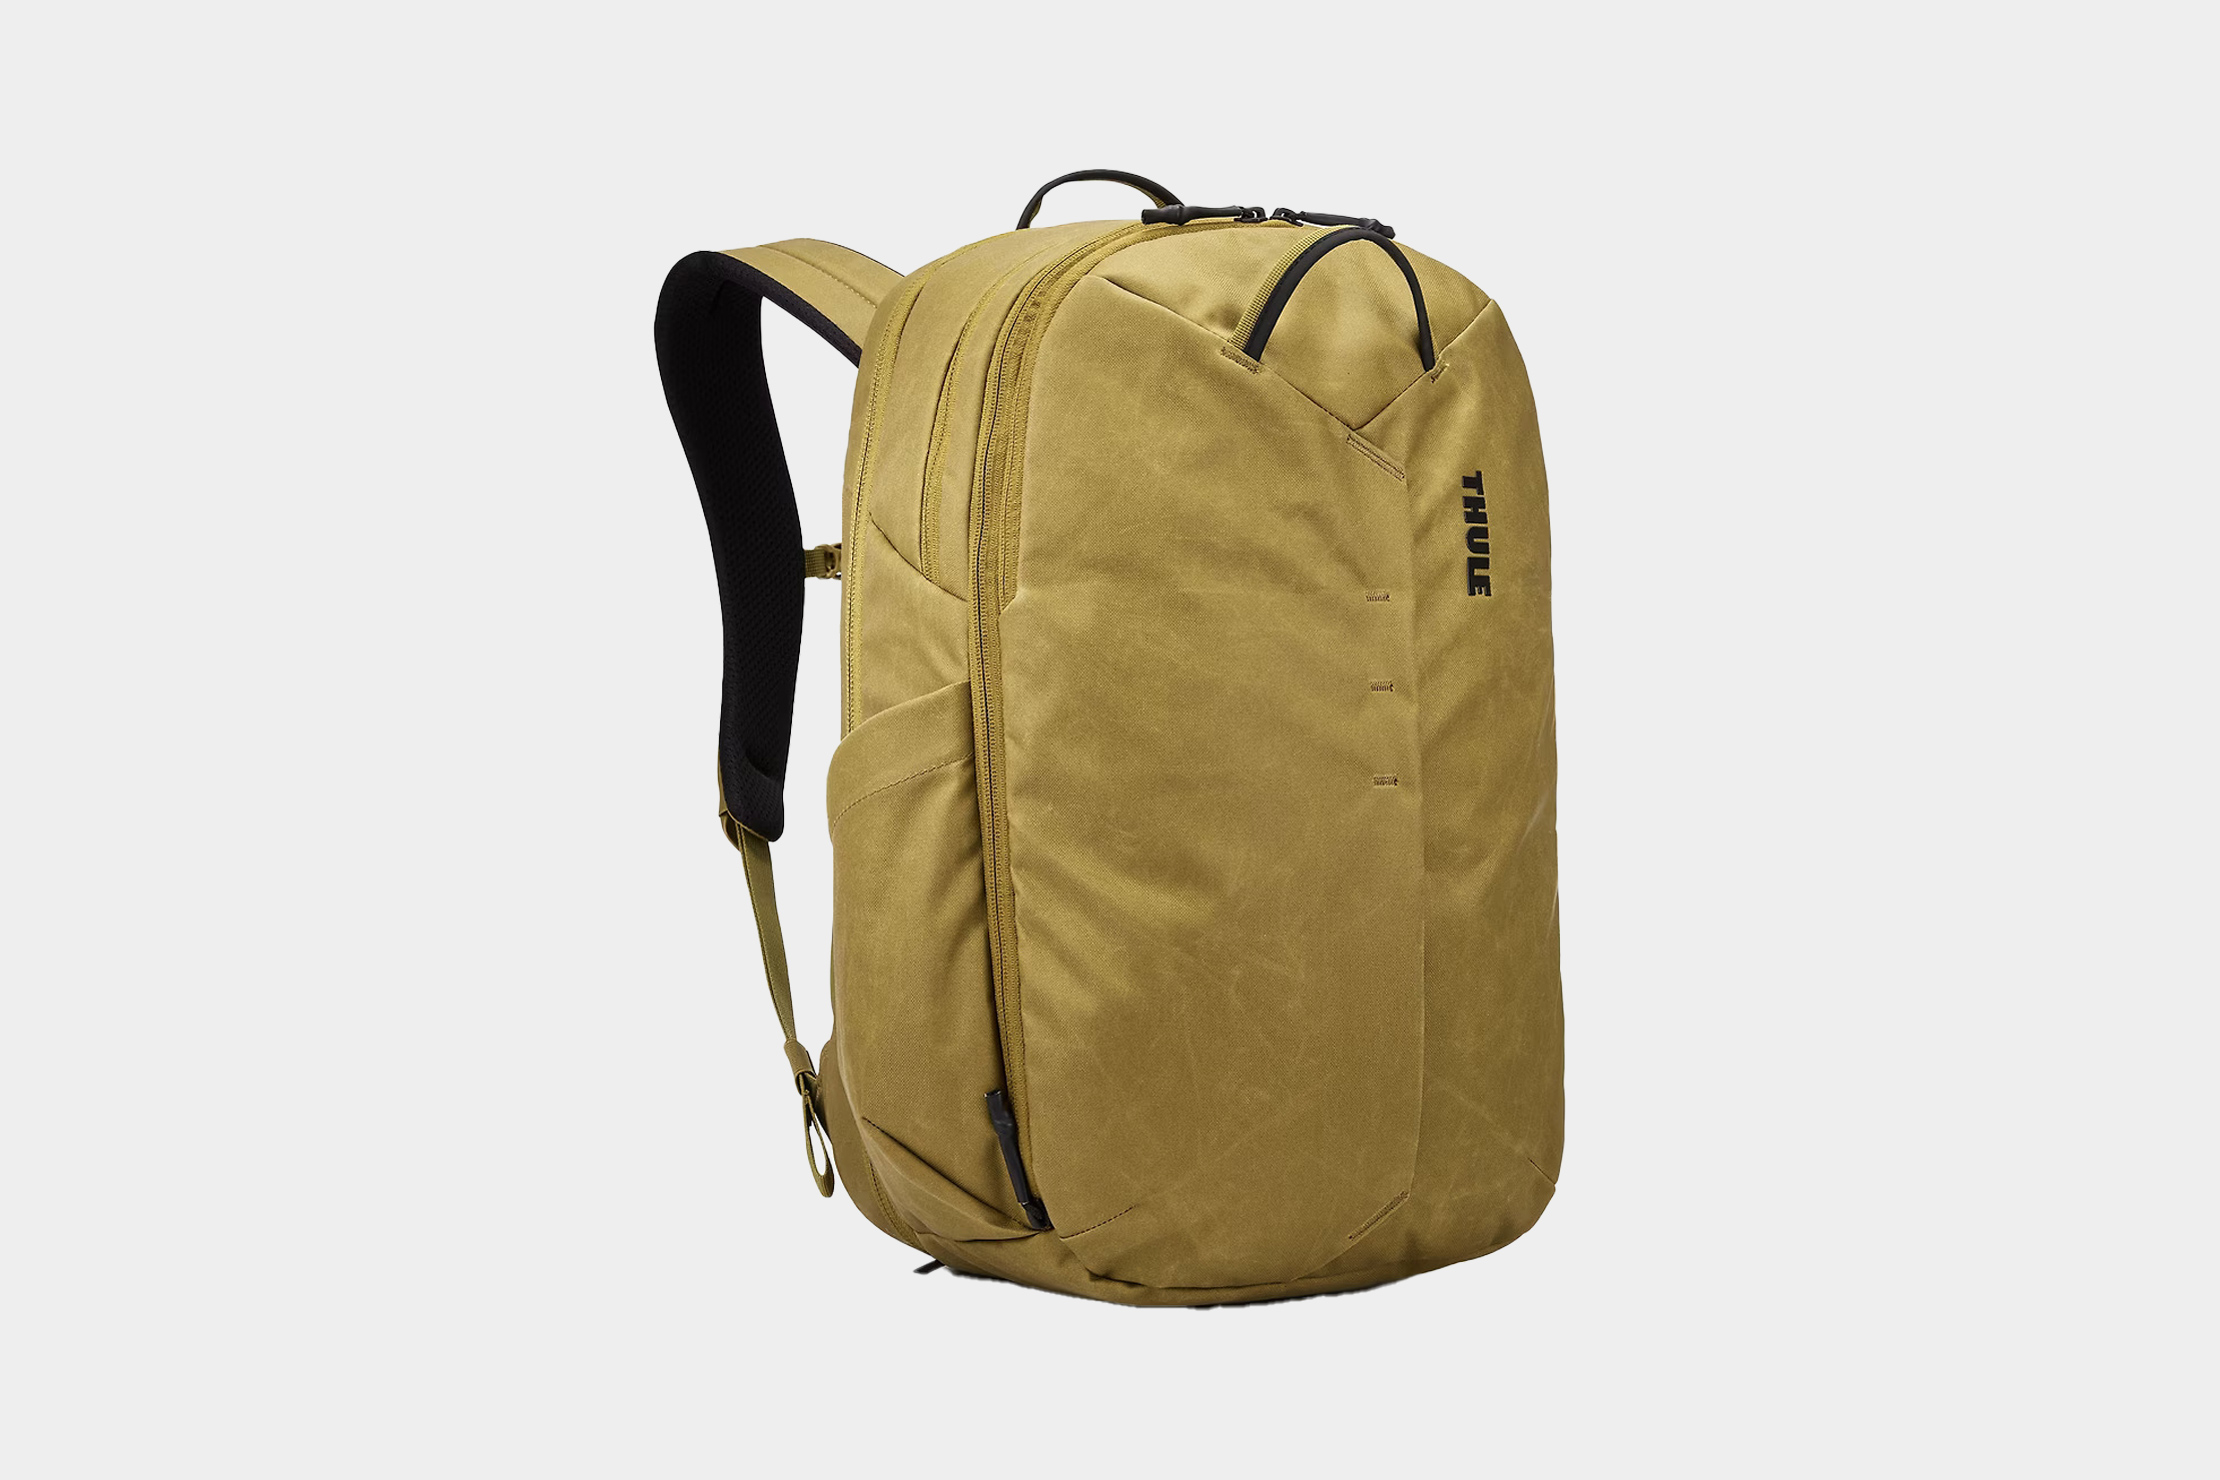 Thule Luggage Indago Backpack – Luggage Pros